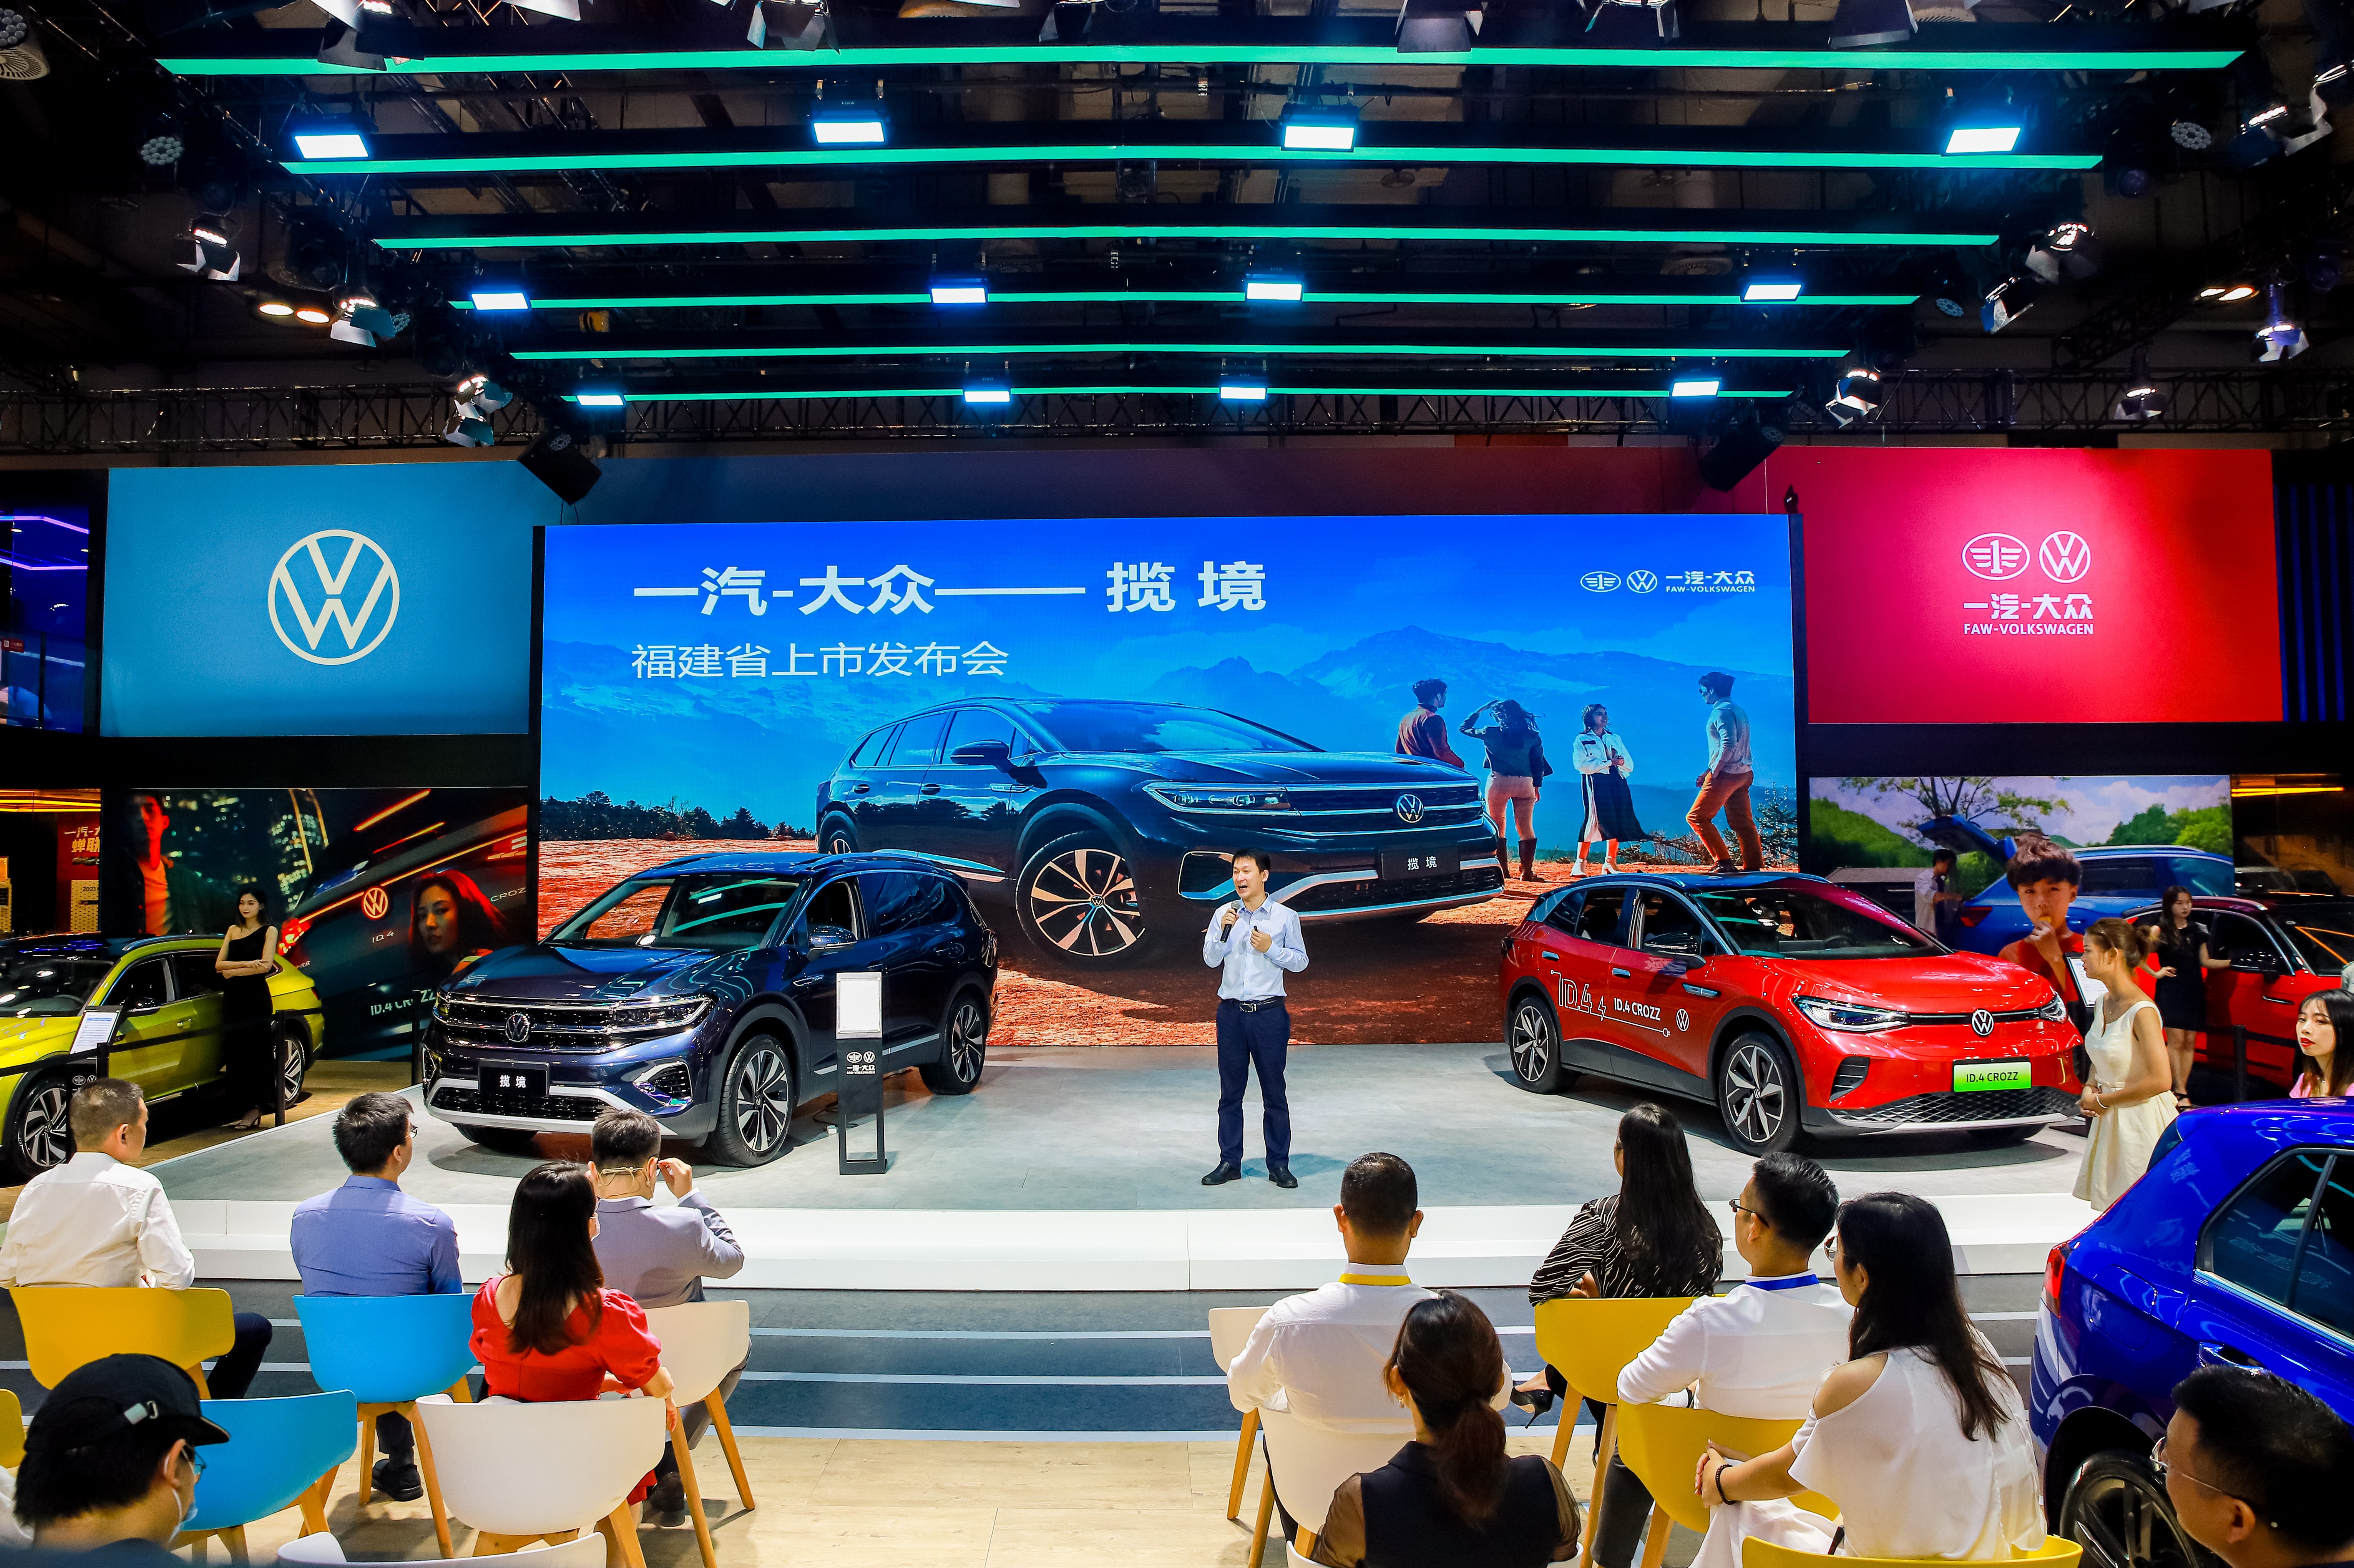 全新全能旗舰SUV Talagon | 一汽-大众首款大型SUV揽境厦门震撼上市